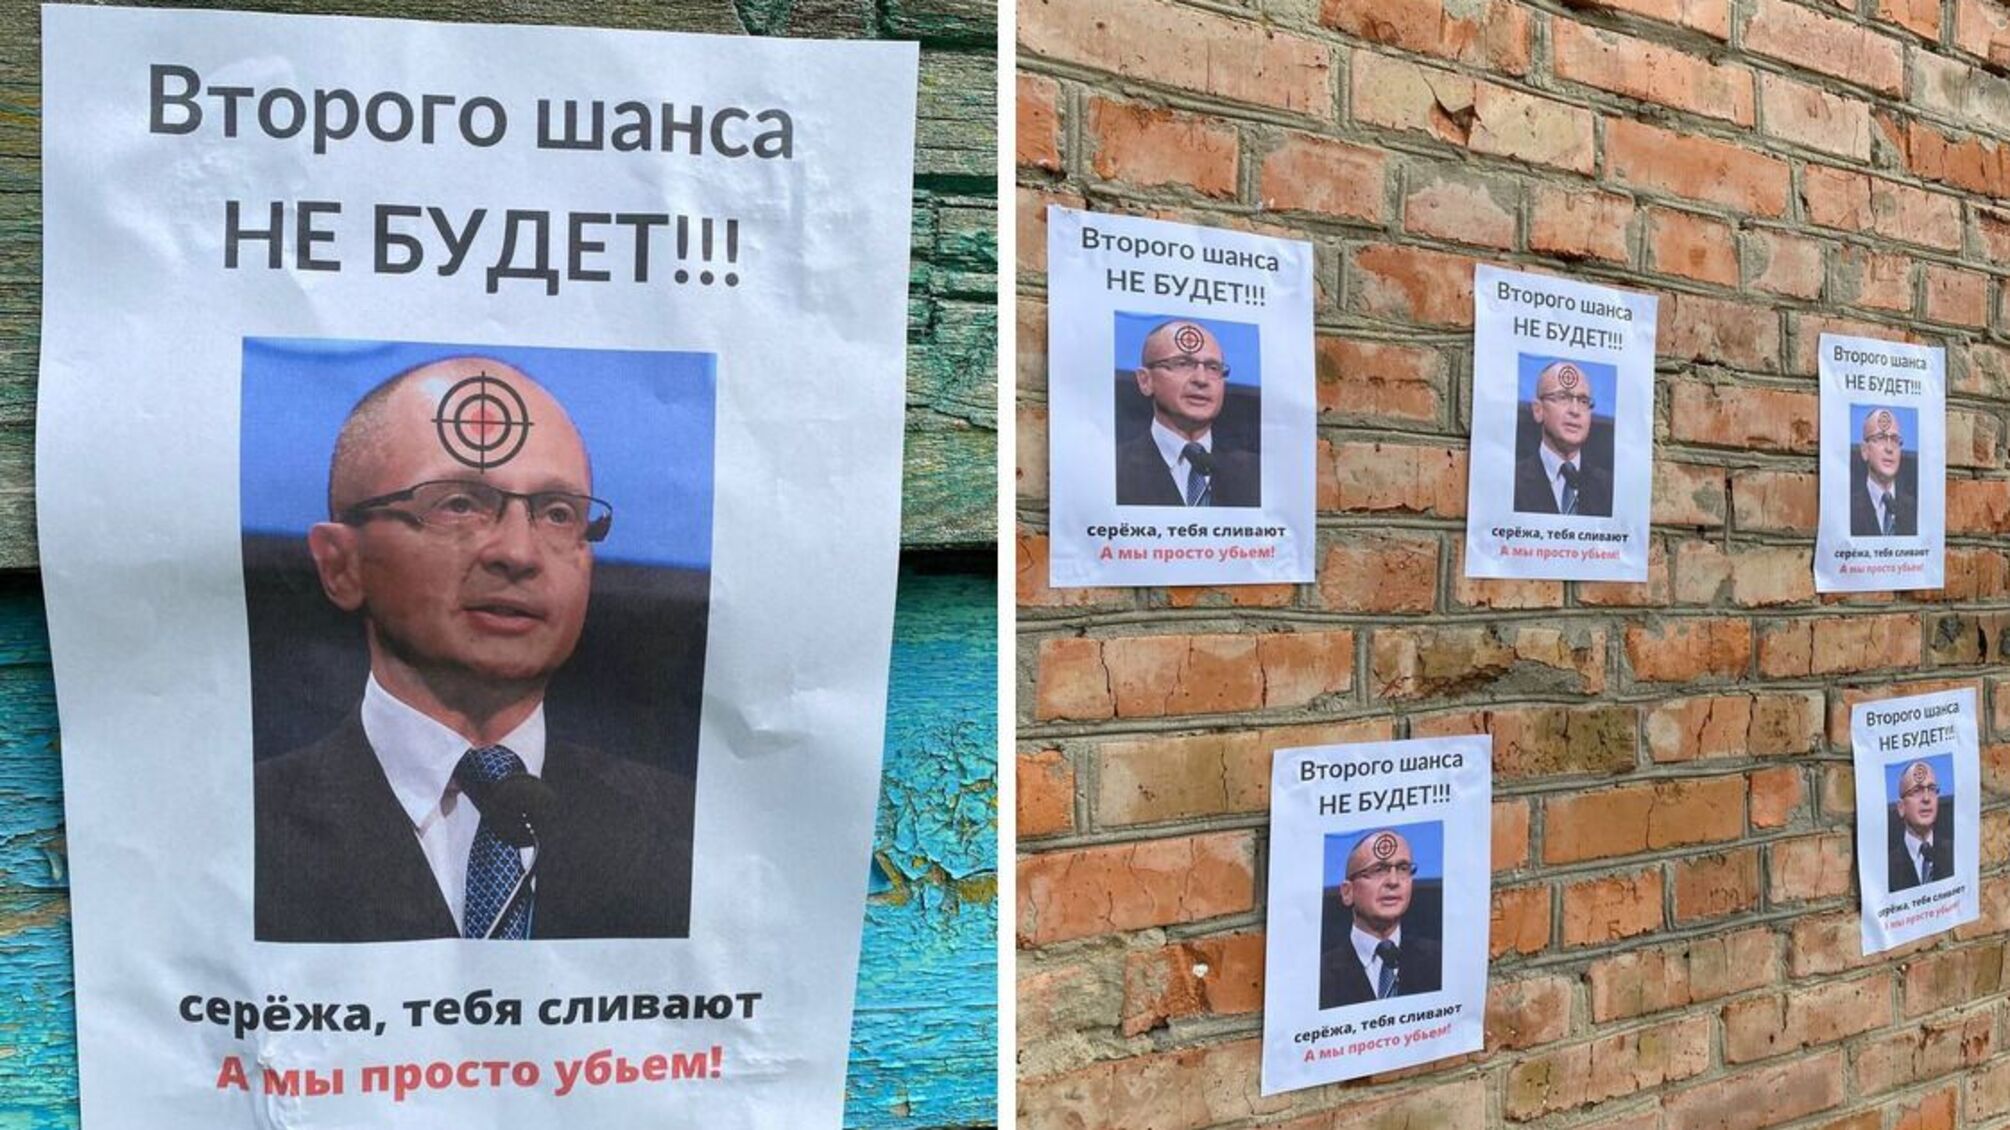 'Второго шанса не будет': херсонские партизаны объявили охоту на администратора рф Кириенко